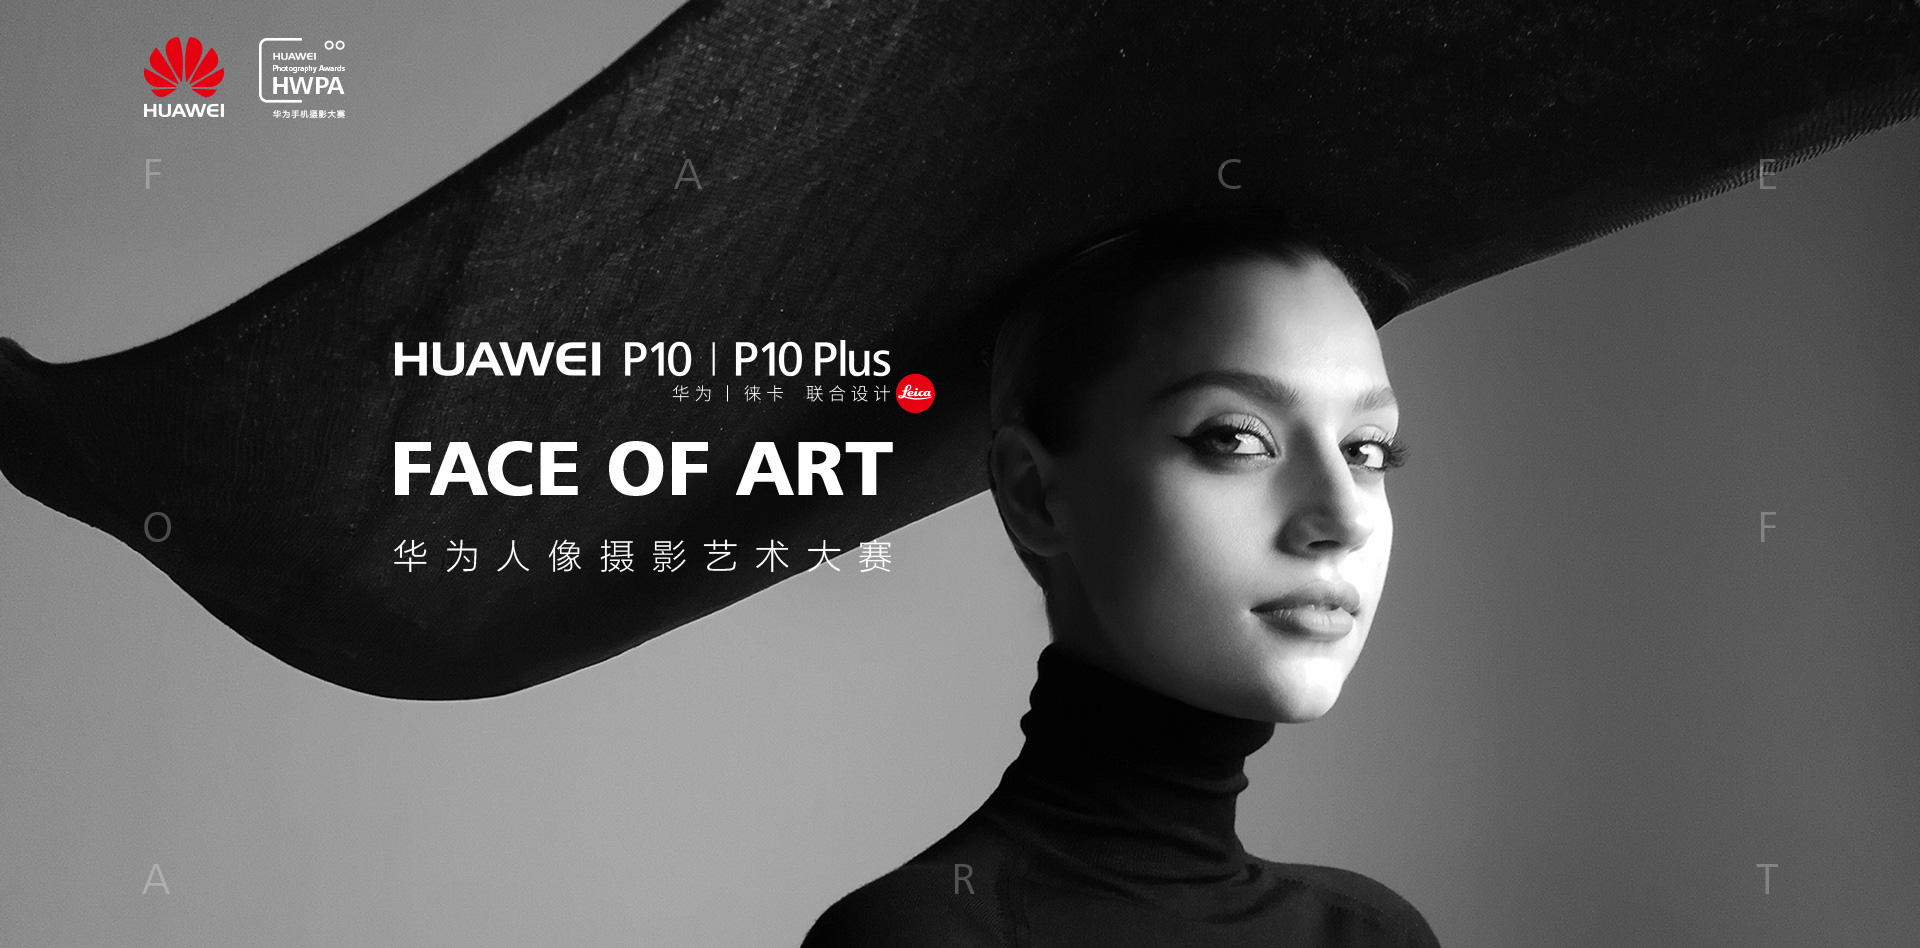 首页 FACE OF ART华为人像摄影艺术大赛| HUAWEI P10|P10 Plus